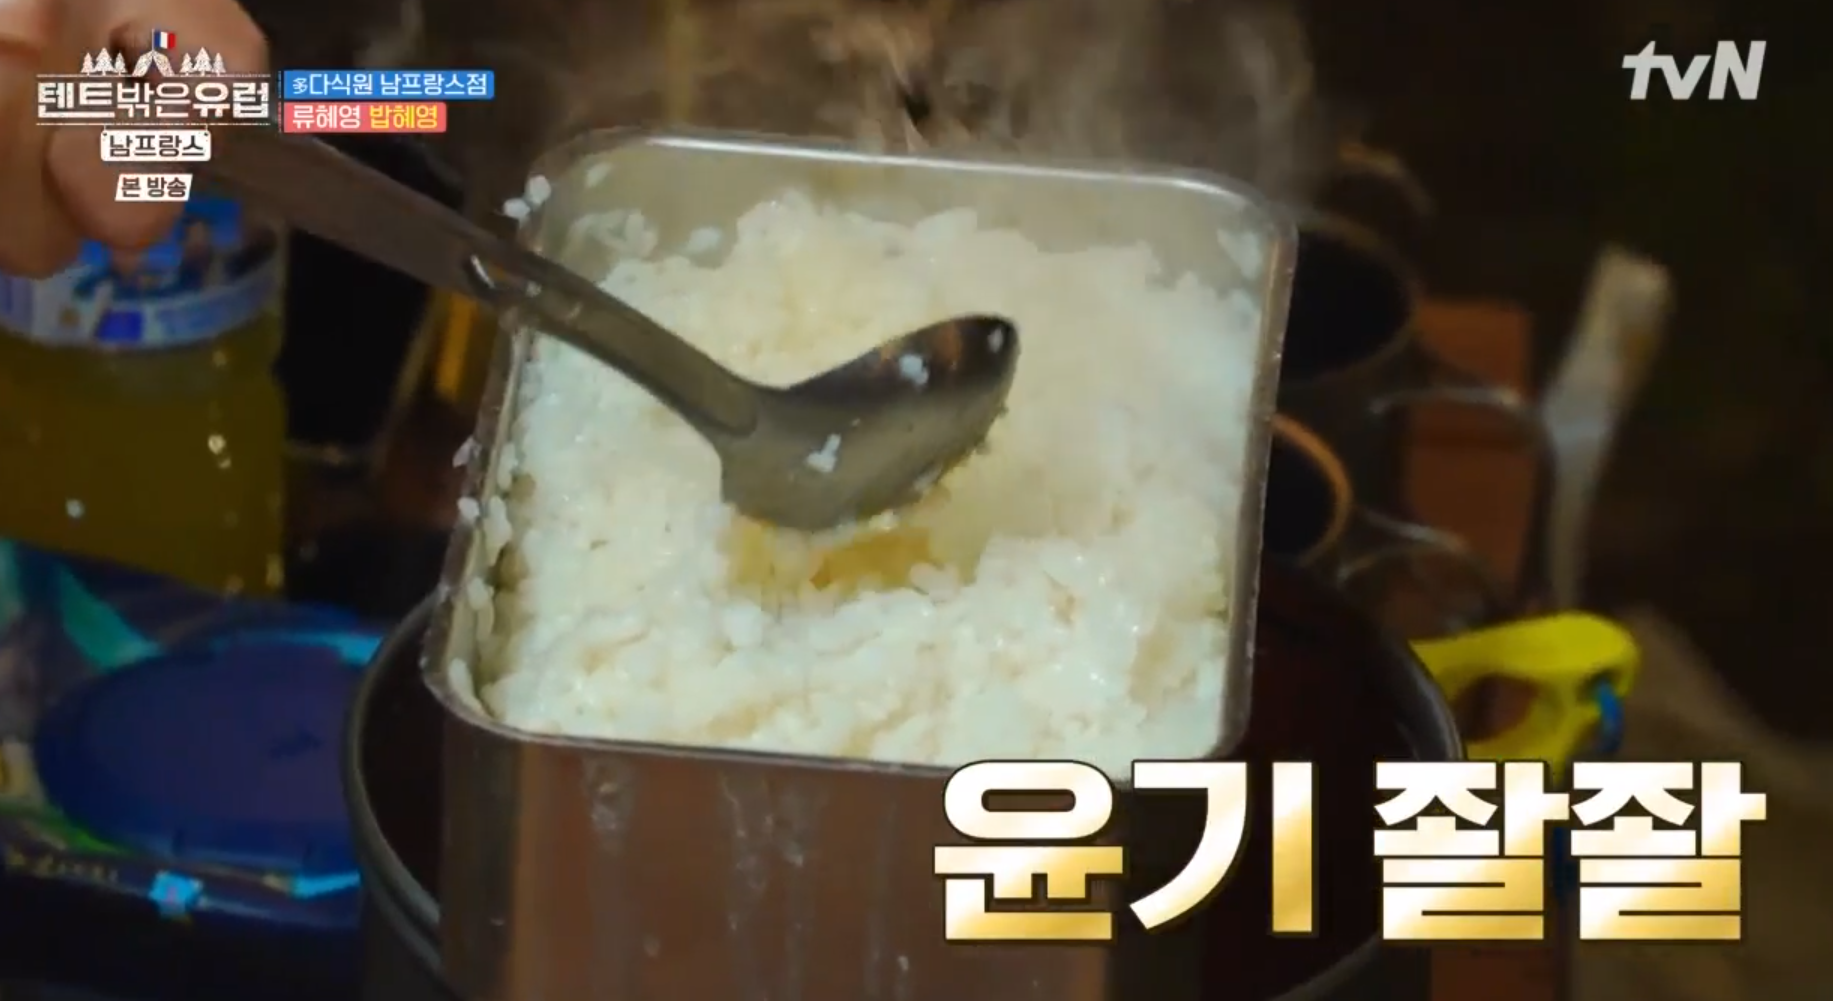 텐트밖은유럽 3회 달인의 경지에 오른 류혜영의 냄비밥